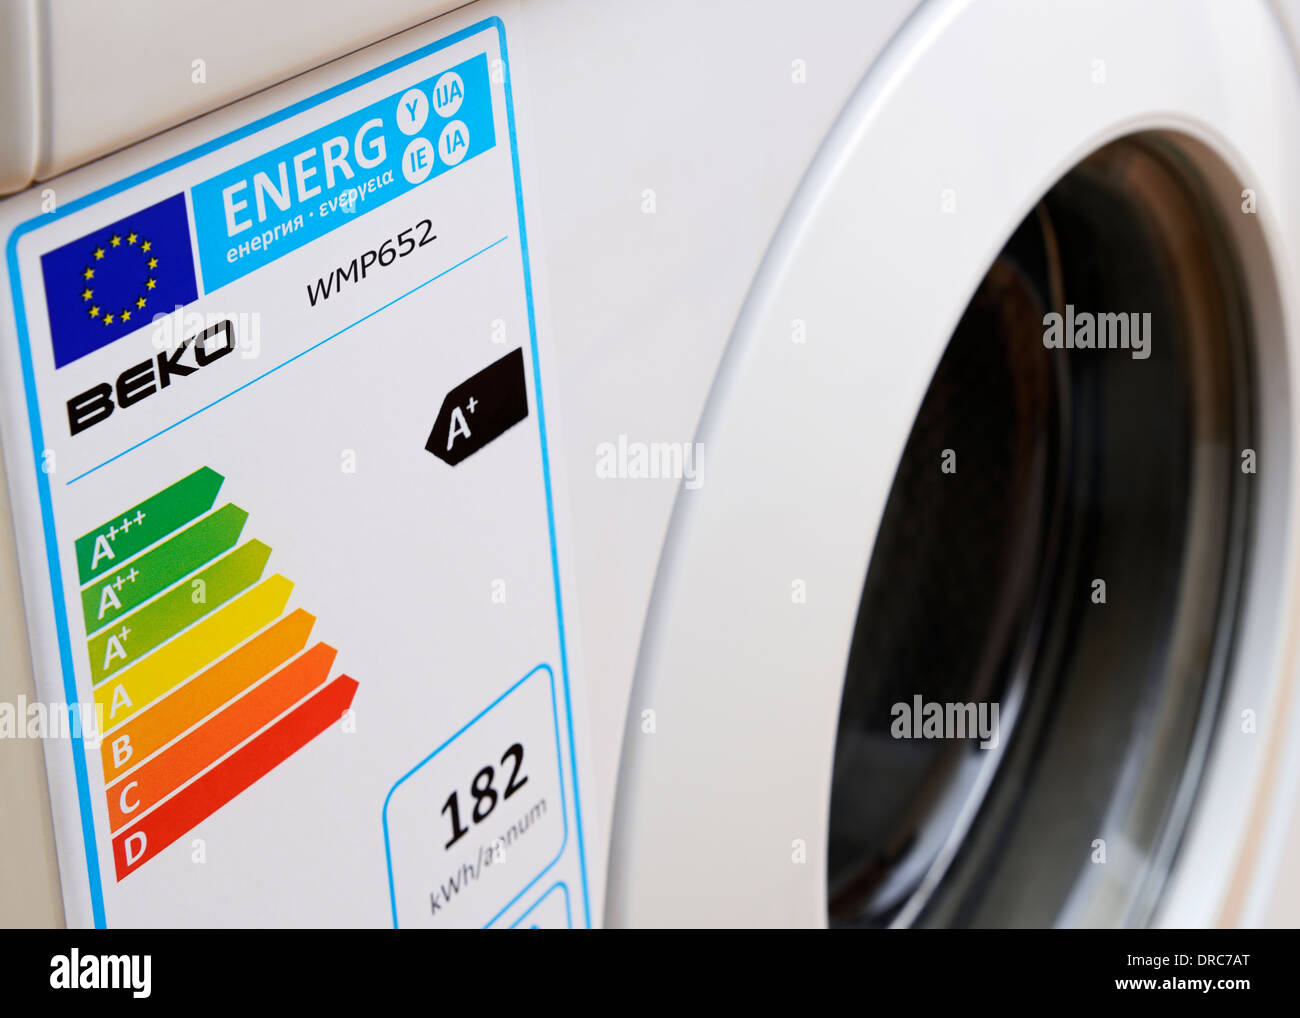 Etiqueta de clasificación energética en una lavadora Foto de stock